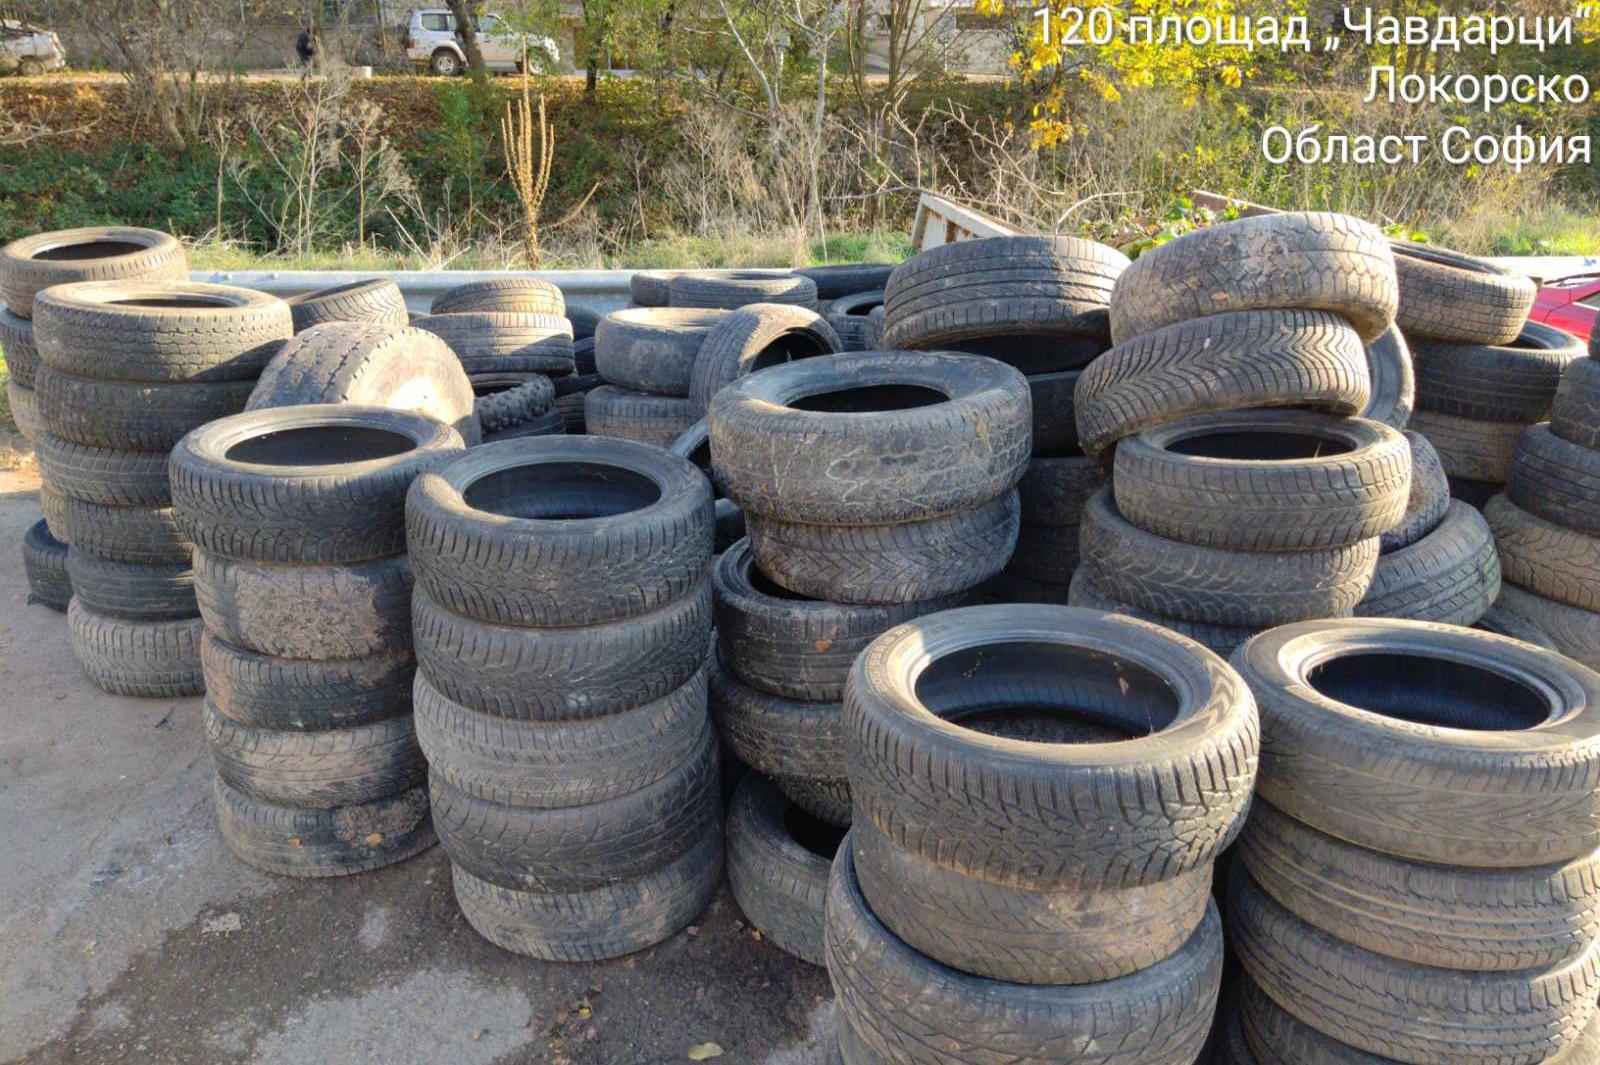 Само за ден: Над 220 стари гуми събрани в село Локорско